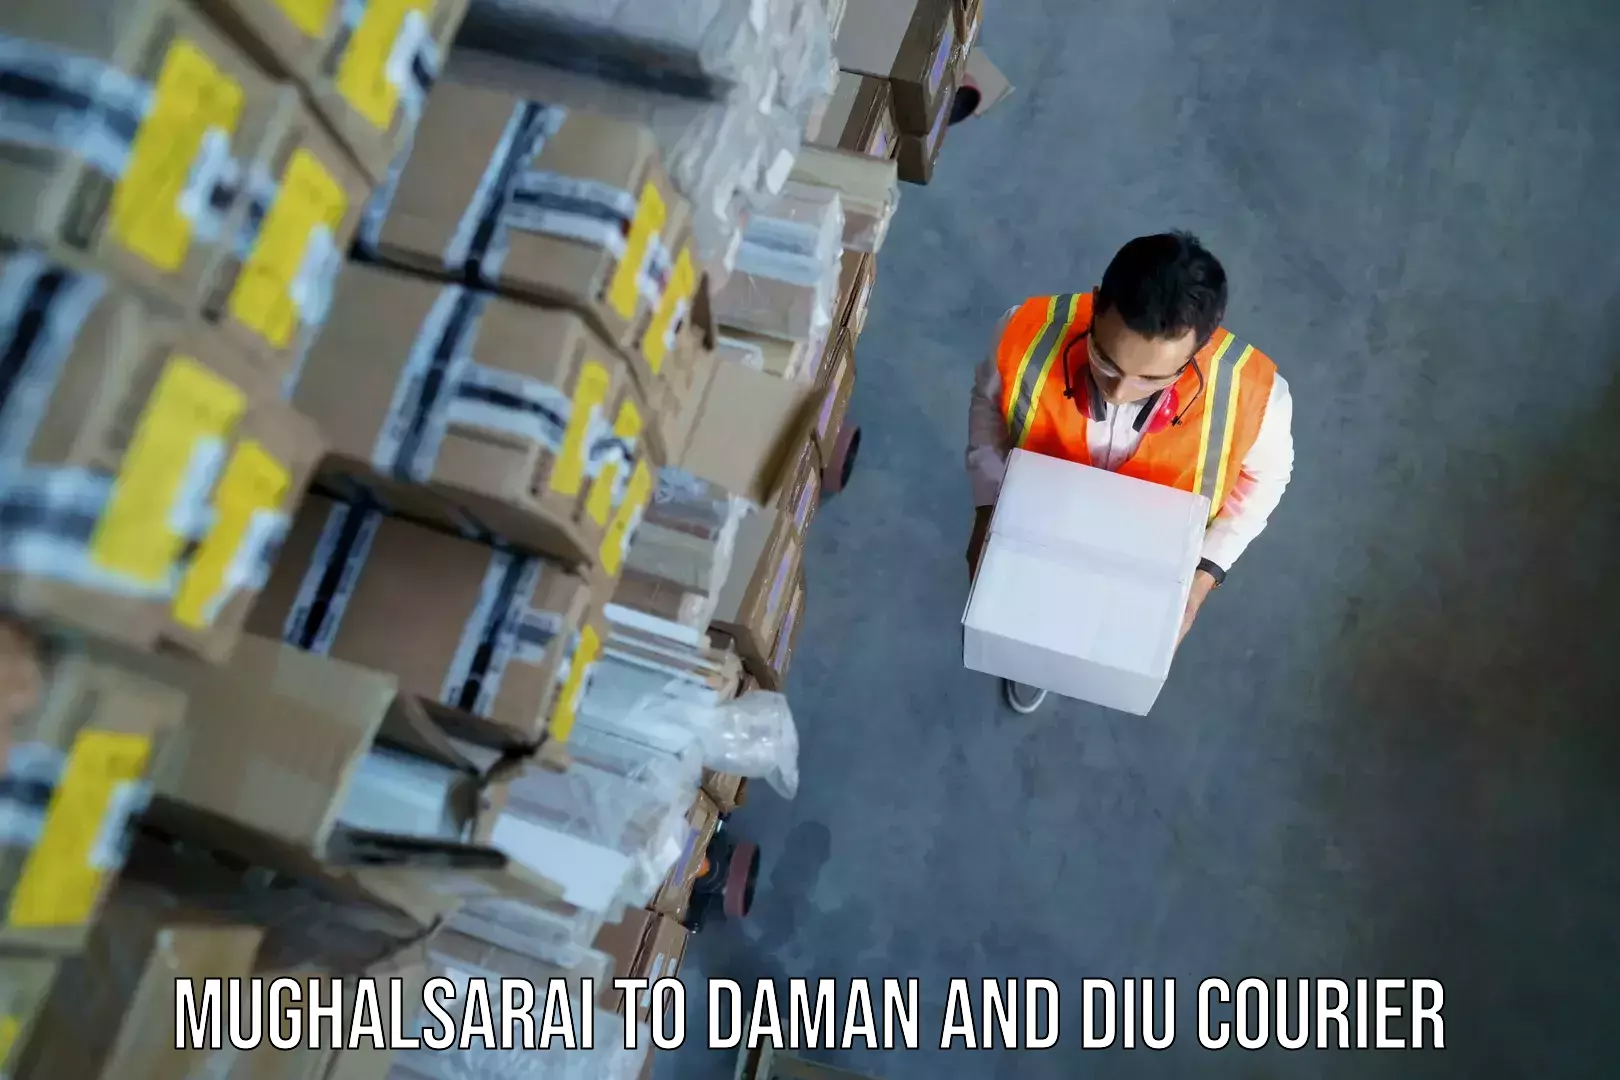 Baggage shipping advice Mughalsarai to Daman